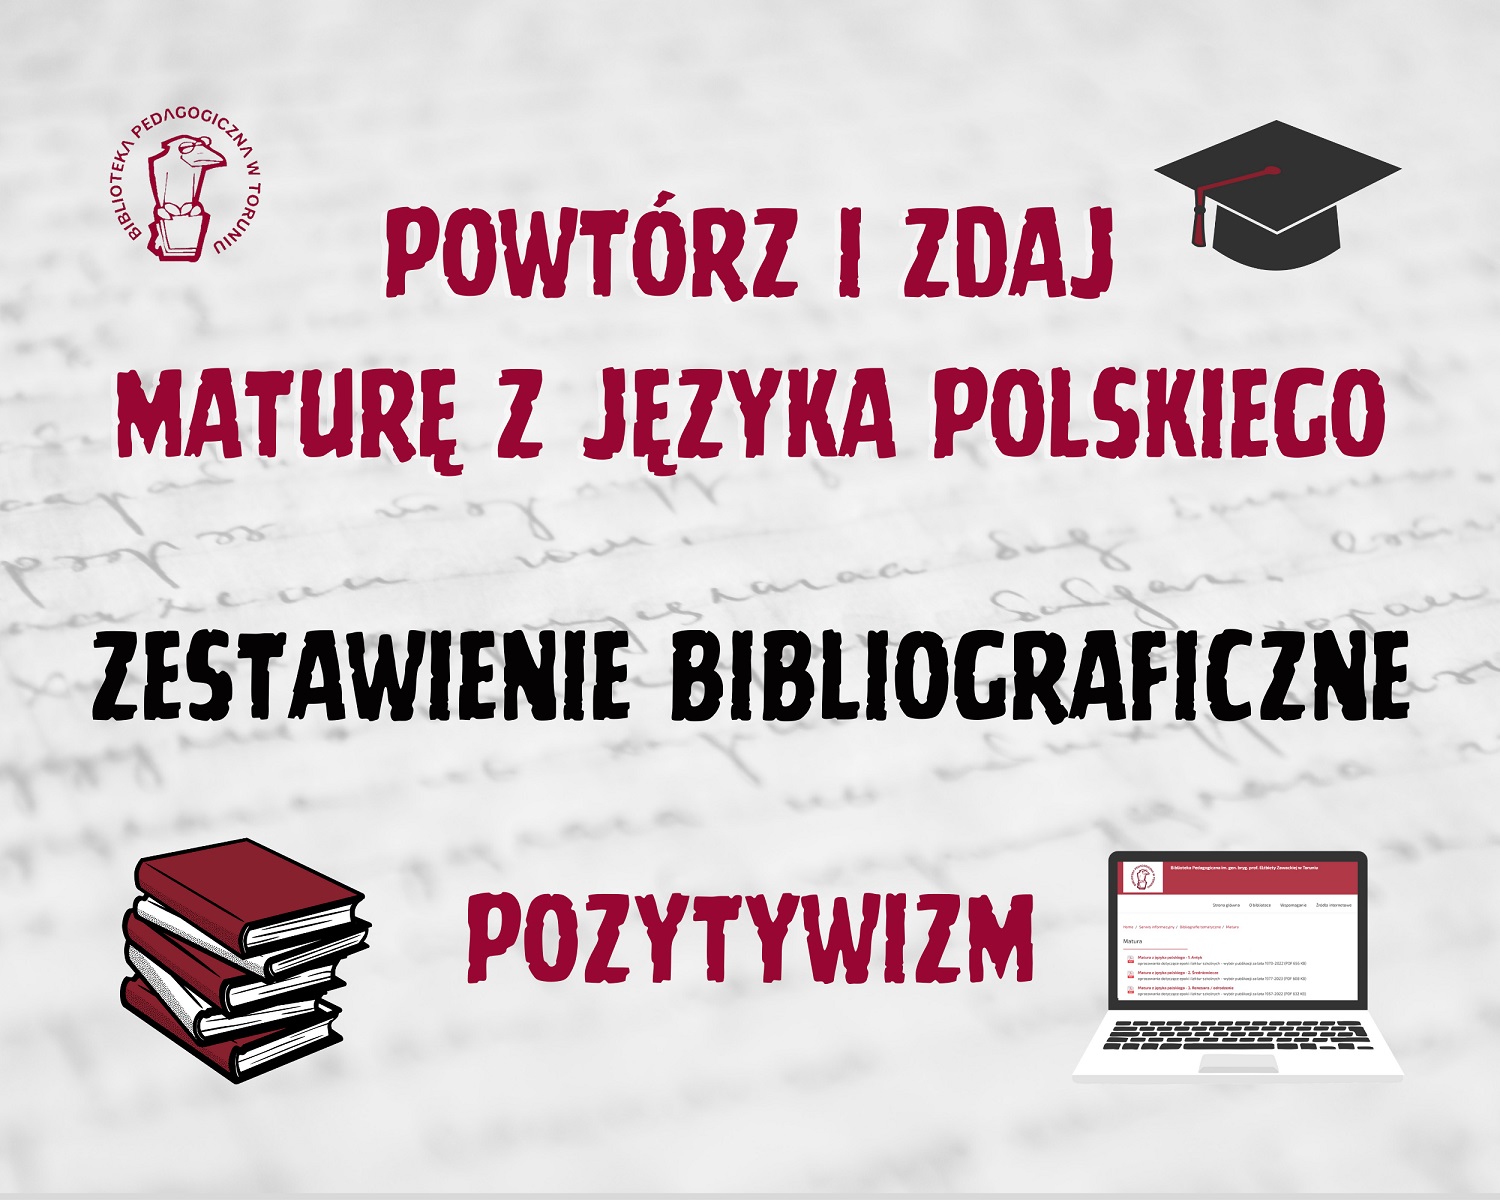 Powtórz i zdaja maturę z języka polskiego - zestawienie bibliograficzne: pozytywizm.